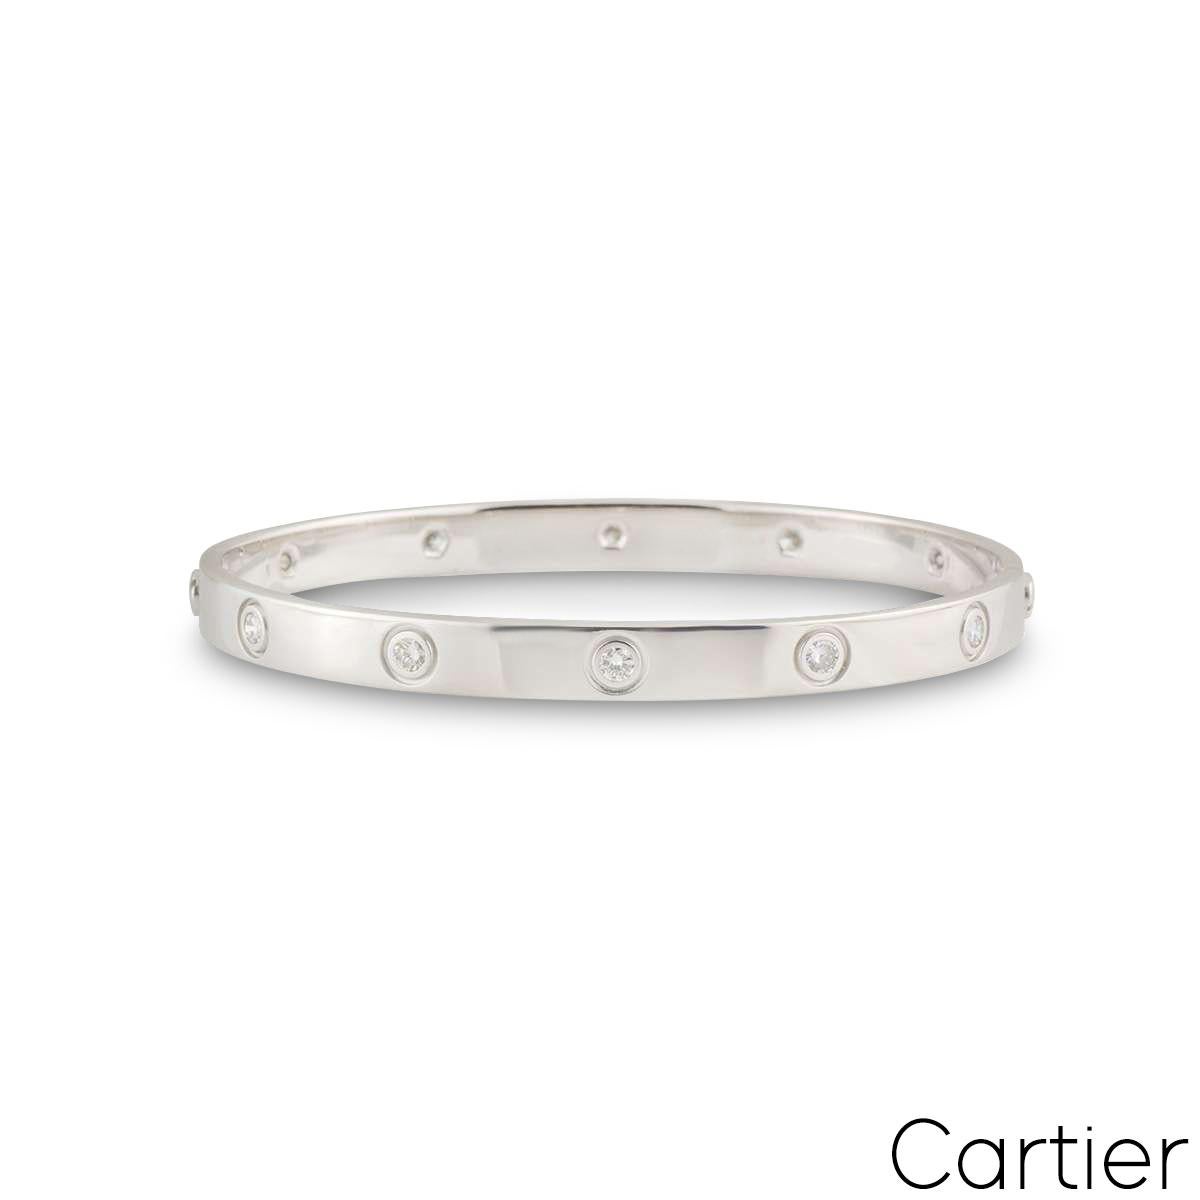 Un bracelet Cartier en or blanc 18 carats plein de diamants de la collection Love. Le bracelet est serti de 10 diamants ronds de taille brillant circulant sur le bord extérieur dans un sertissage de type rubover. Le bracelet est de taille 17 et